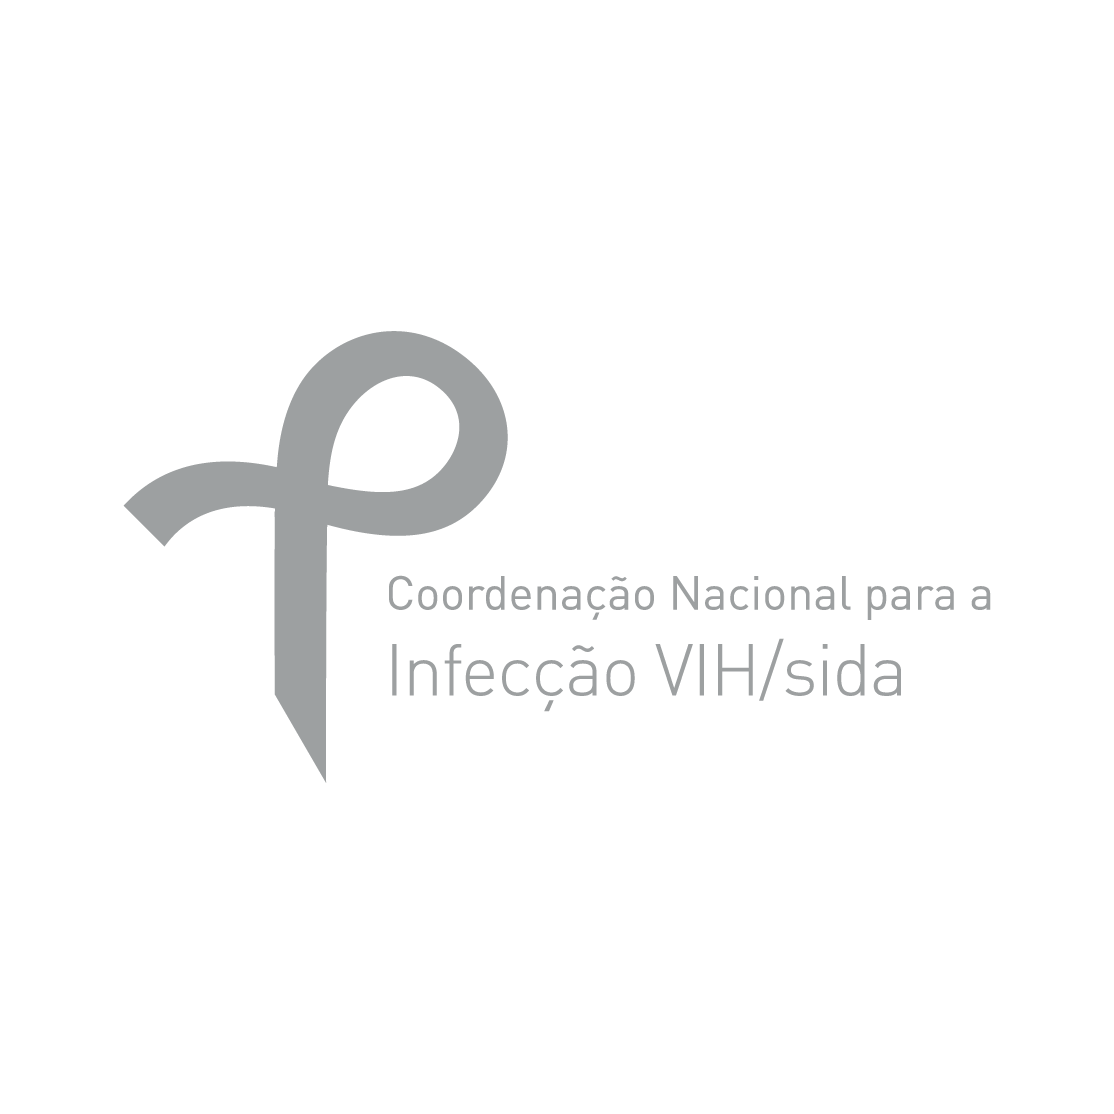 Coordenação Nacional para a Infecção VIH/SIDA